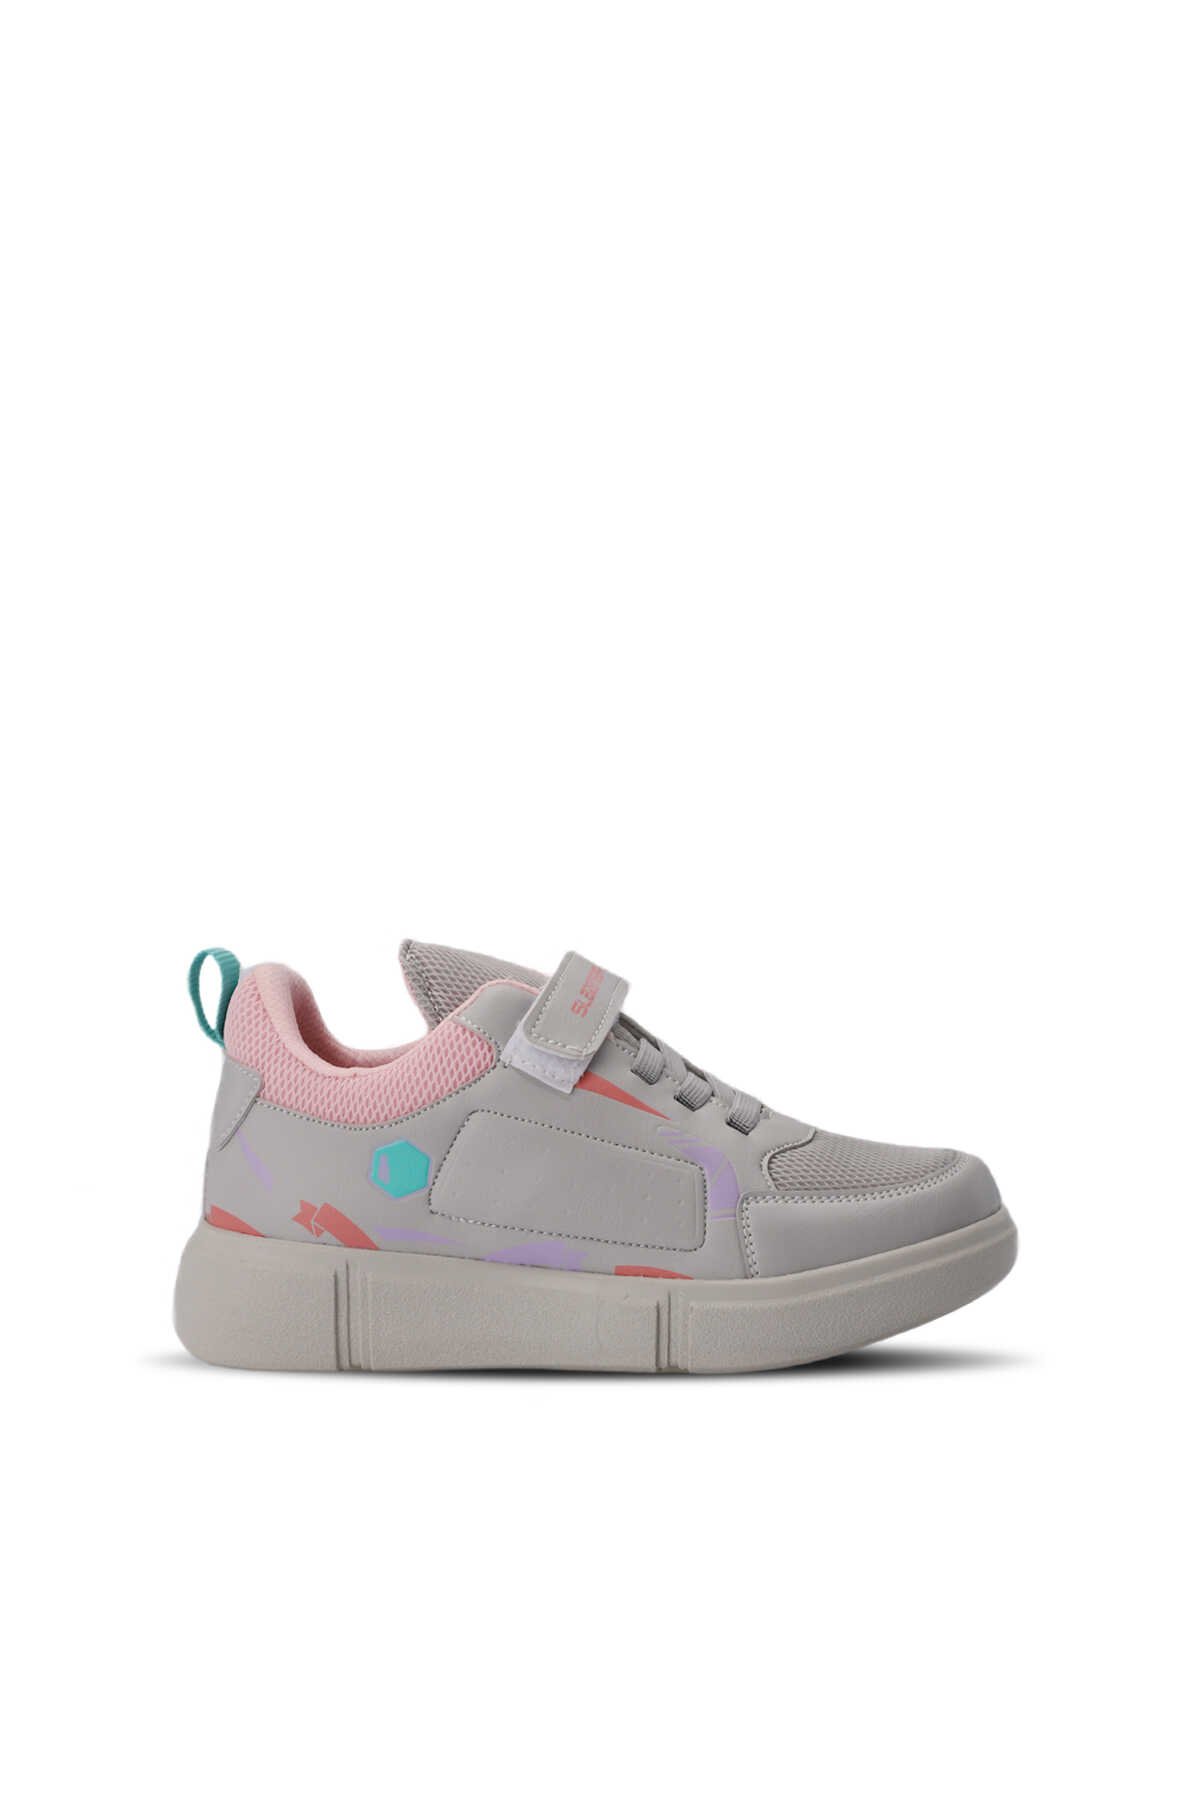 Slazenger - KEPA Sneaker Kız Çocuk Ayakkabı Koyu Gri / Pembe